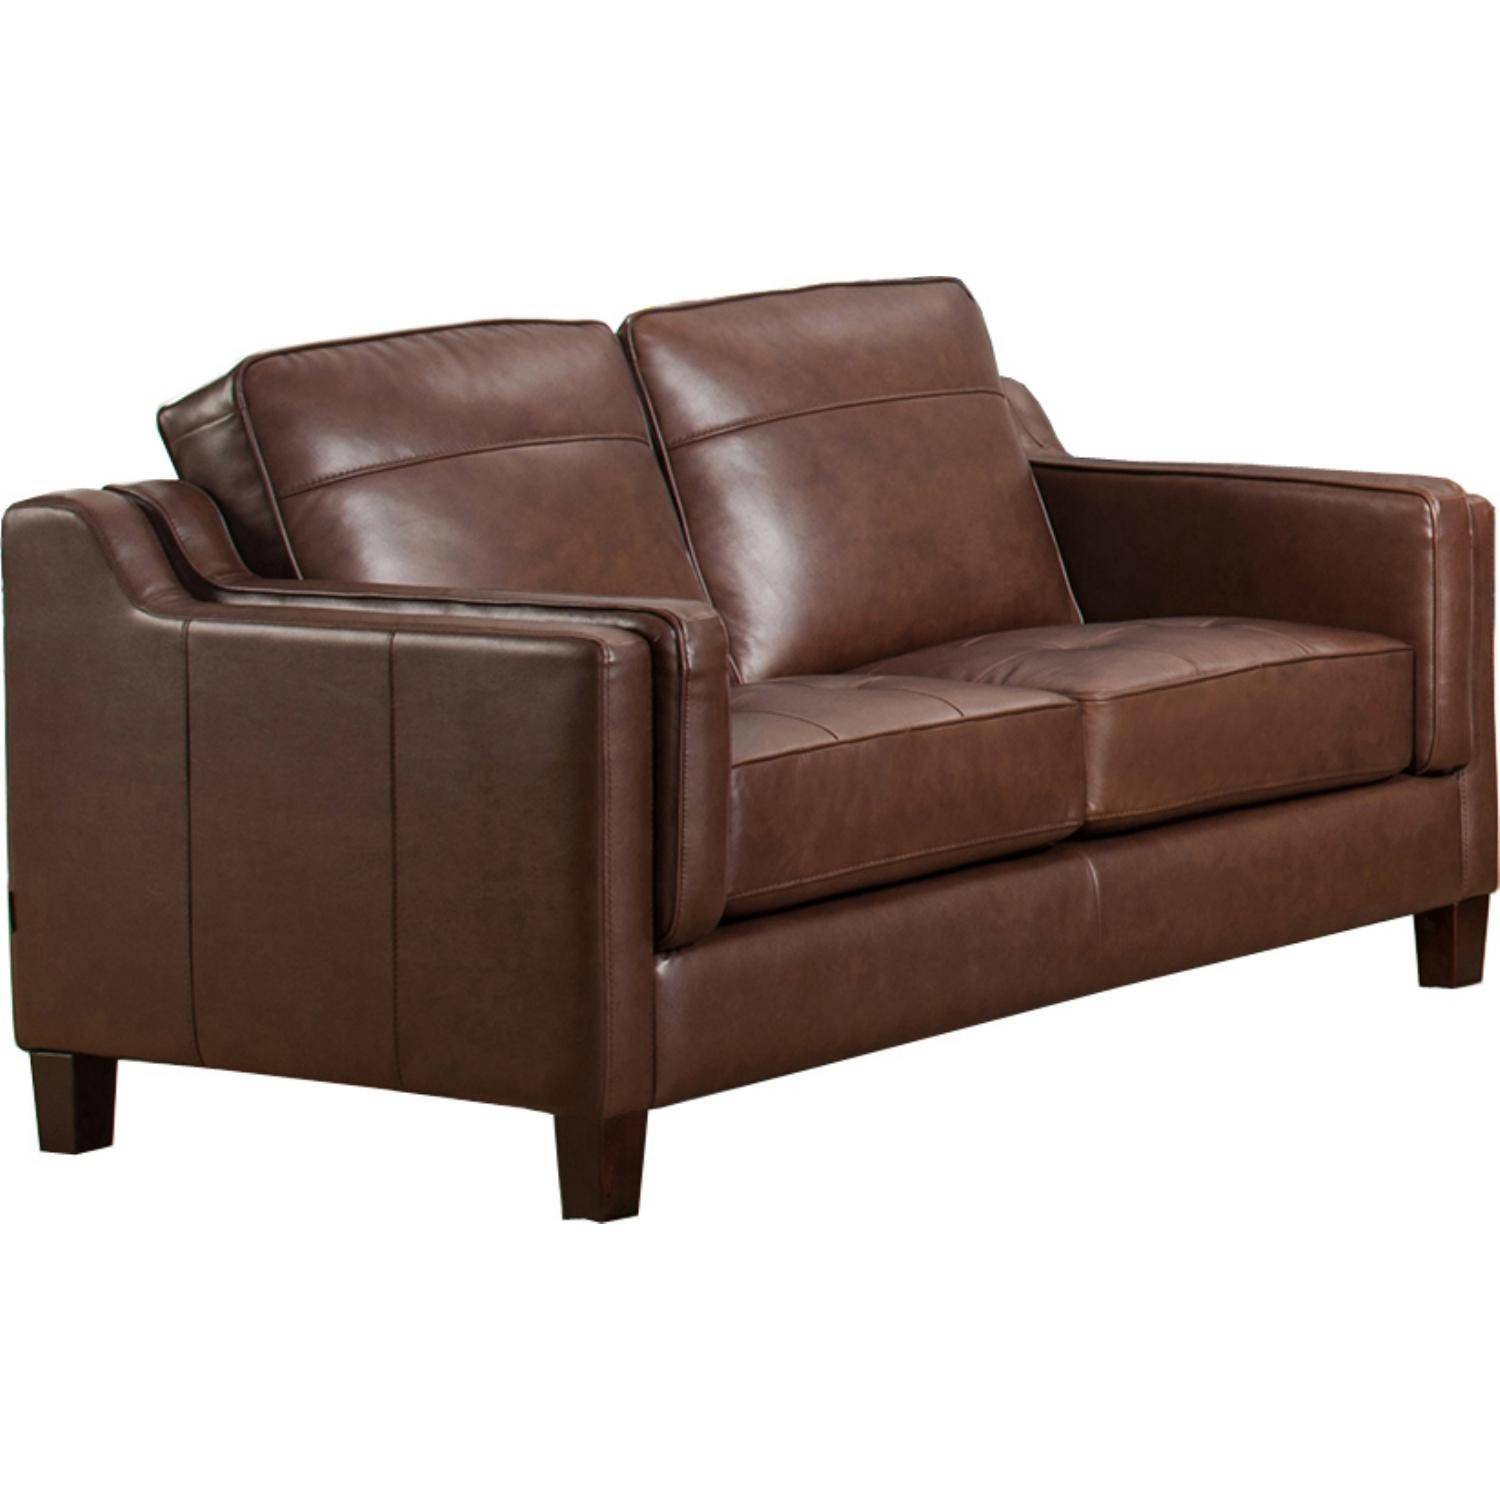 Buy Amax Acorn Sofa Loveseat and Chair Set 3 Pcs in Brown, Top grain ...